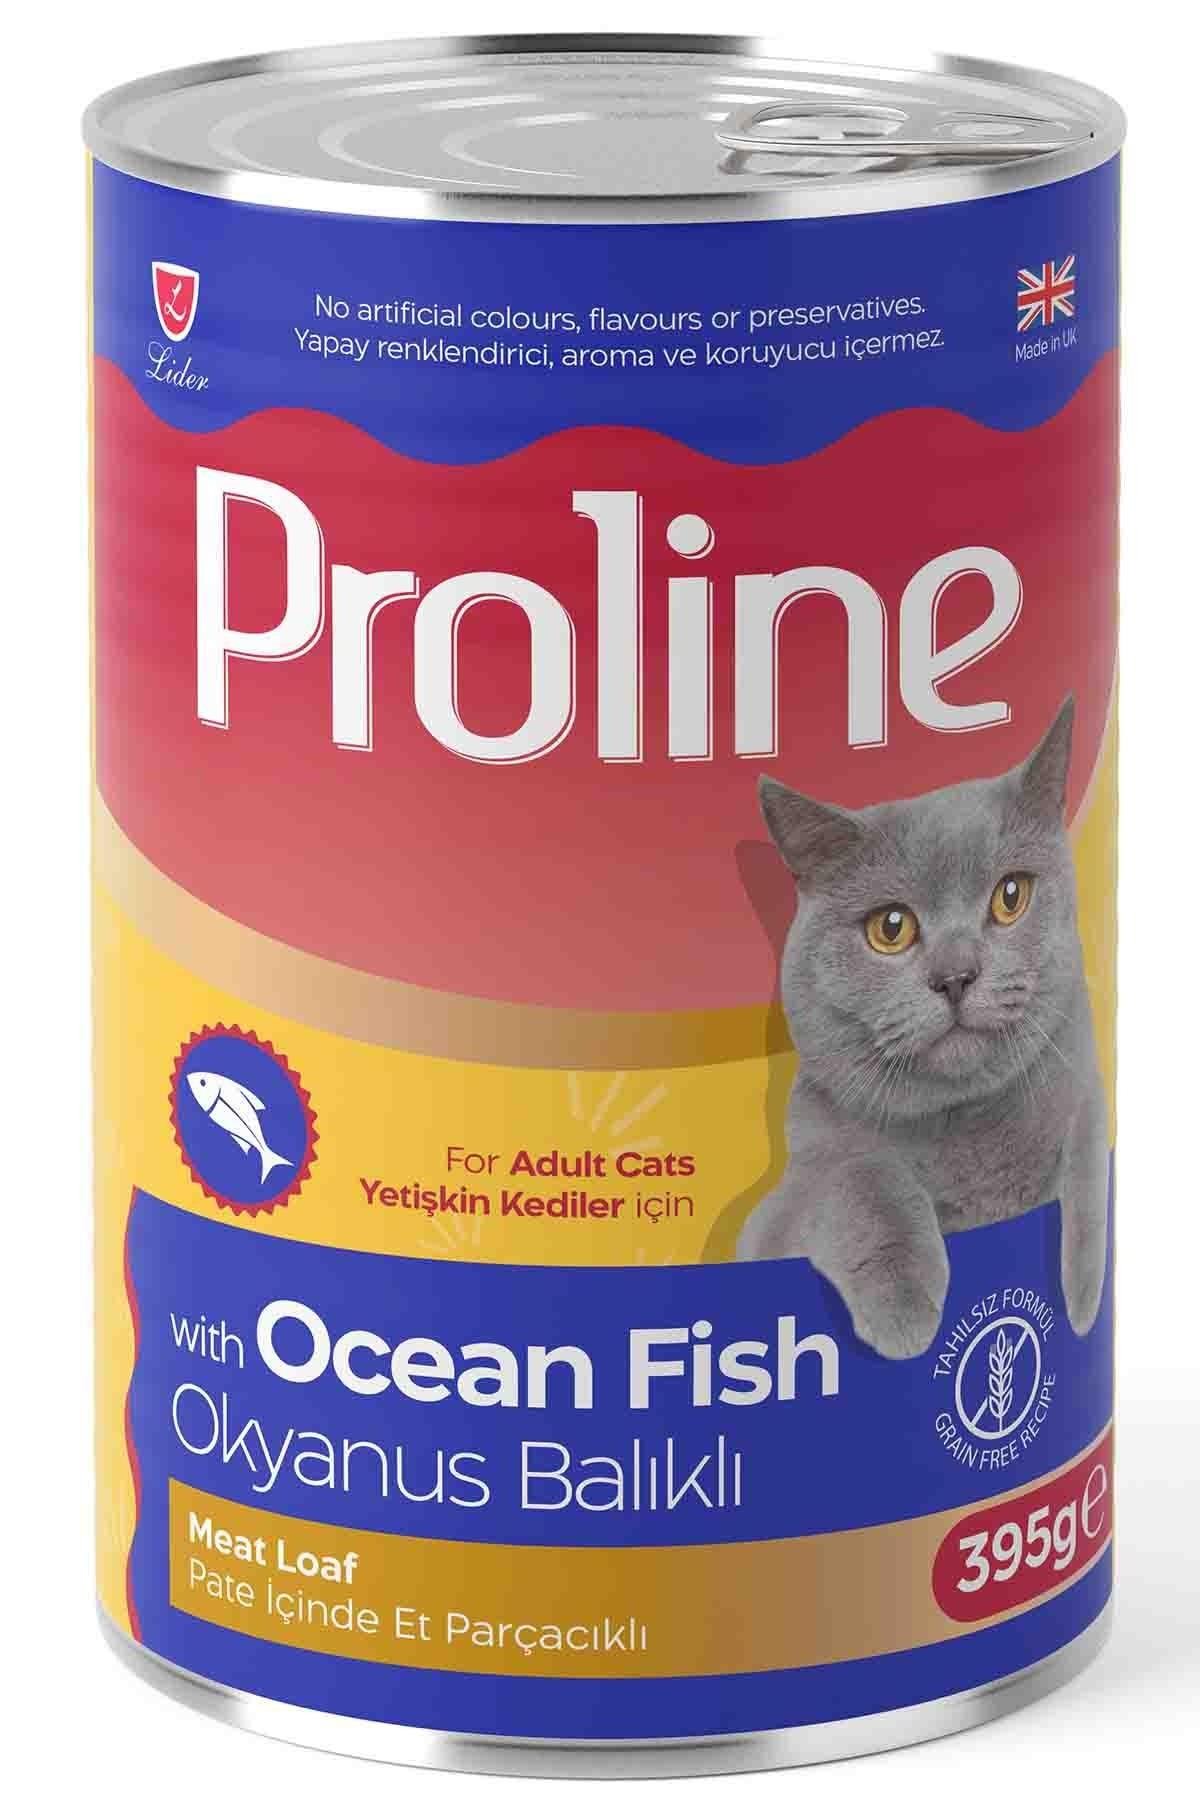 Proline Pate İçinde Et Parçacıklı Okyanus Balıklı Yetişkin Kedi Konservesi 395 Gr